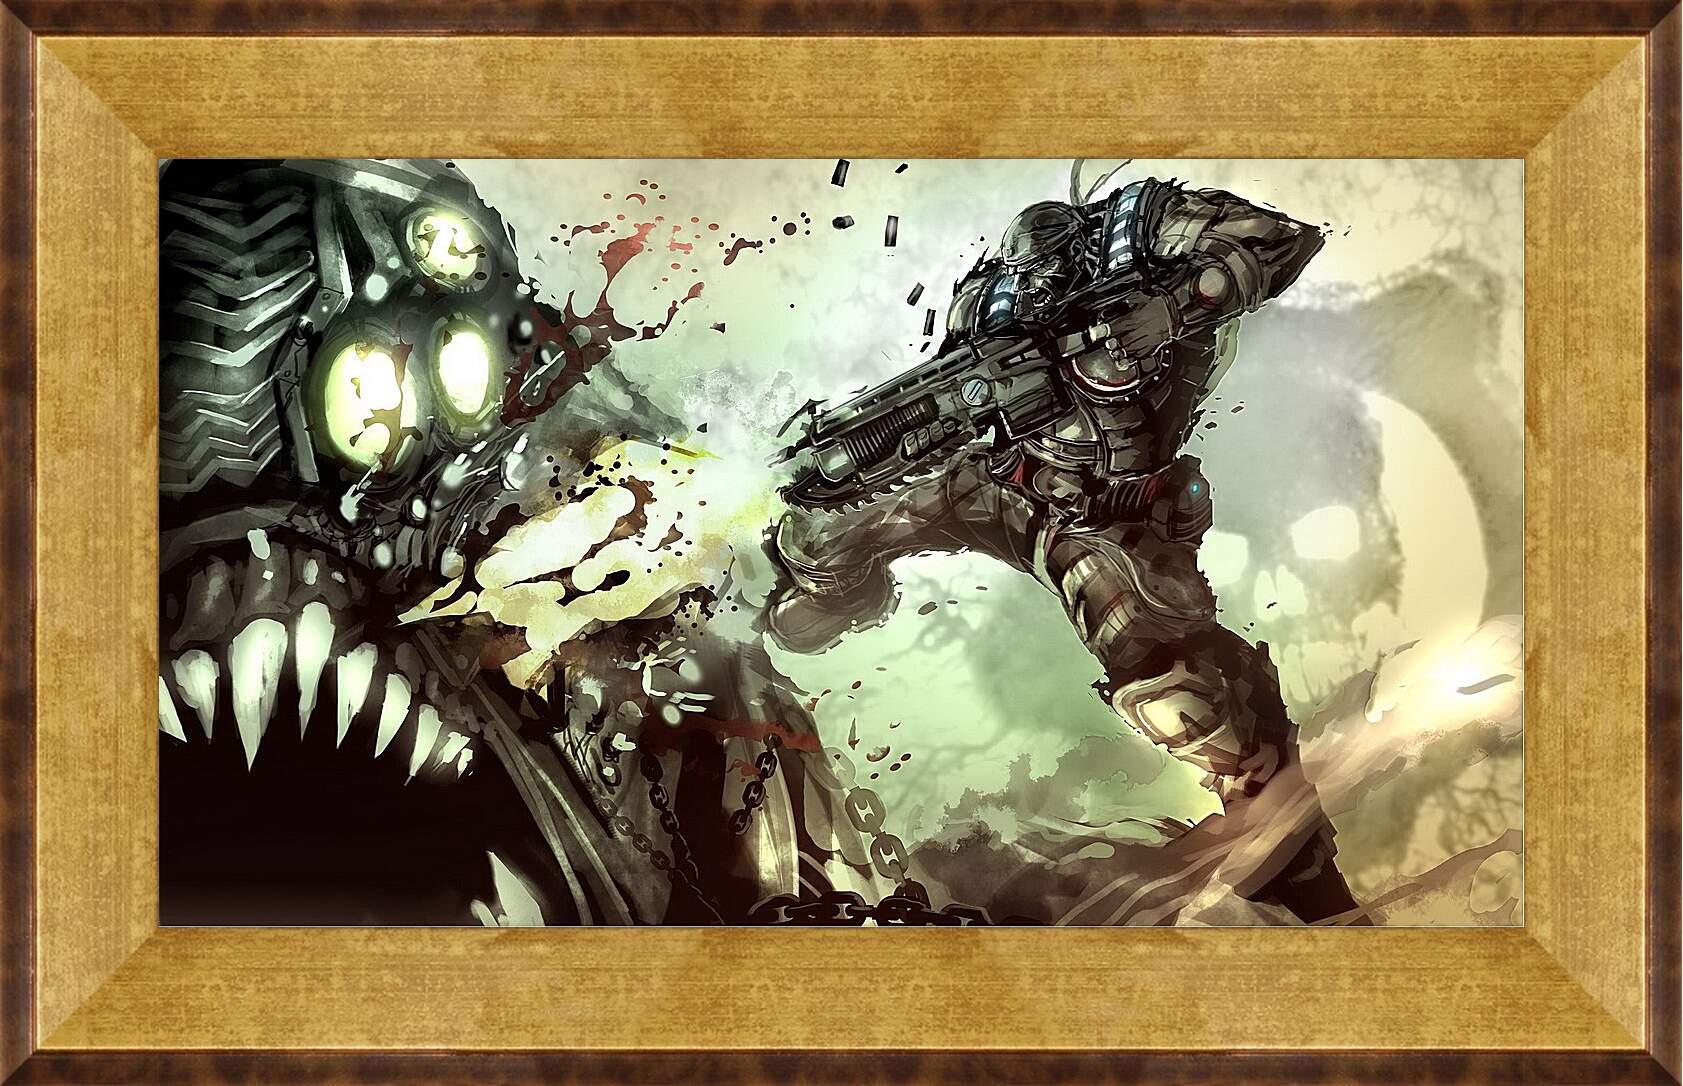 Картина в раме - Gears Of War
